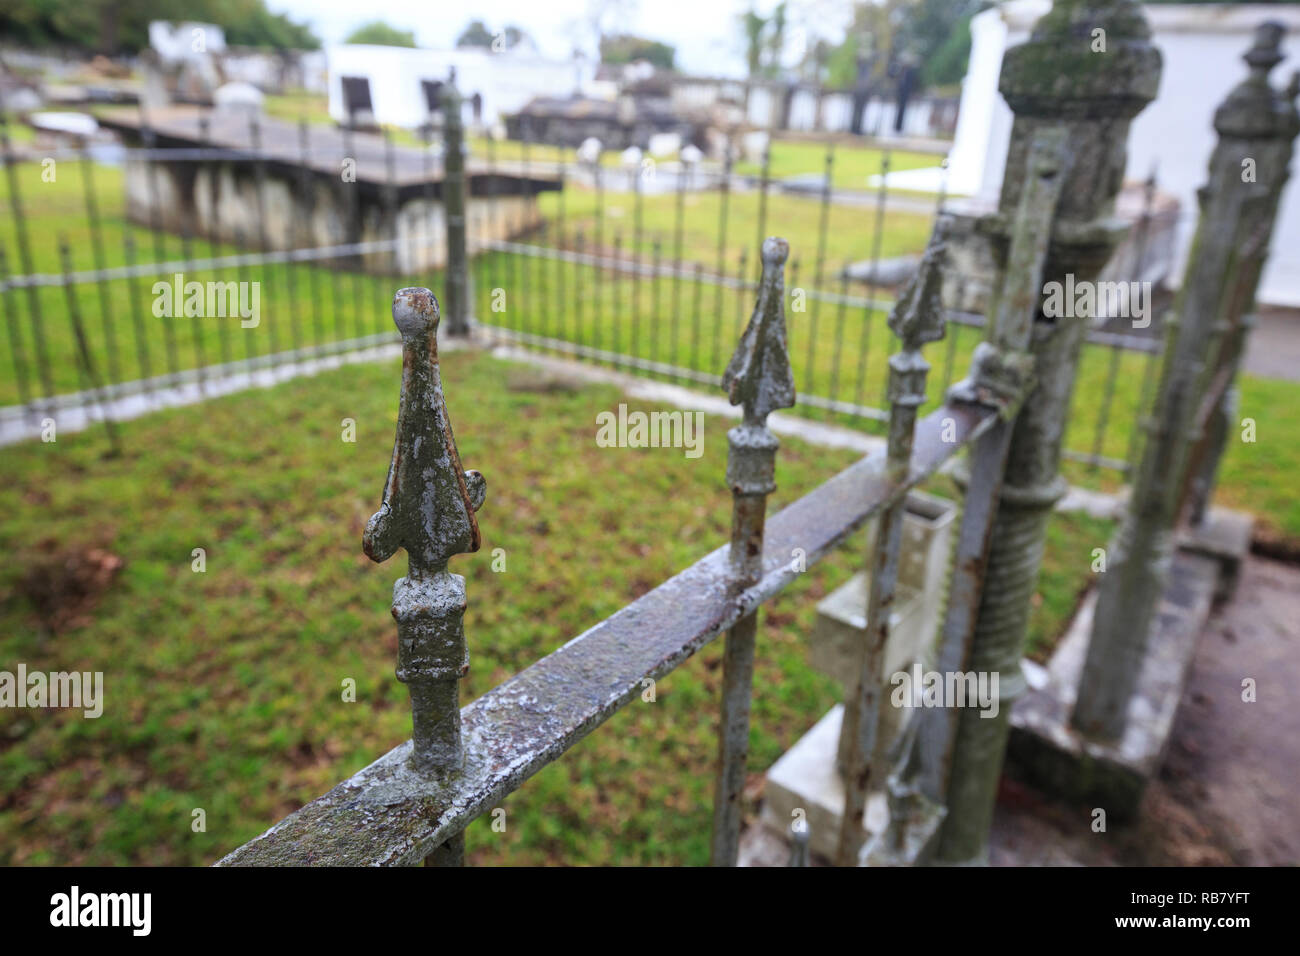 Verja de hierro forjado que rodean una grave parcela en un cementerio en Madisonville, Alabama. Foto de stock